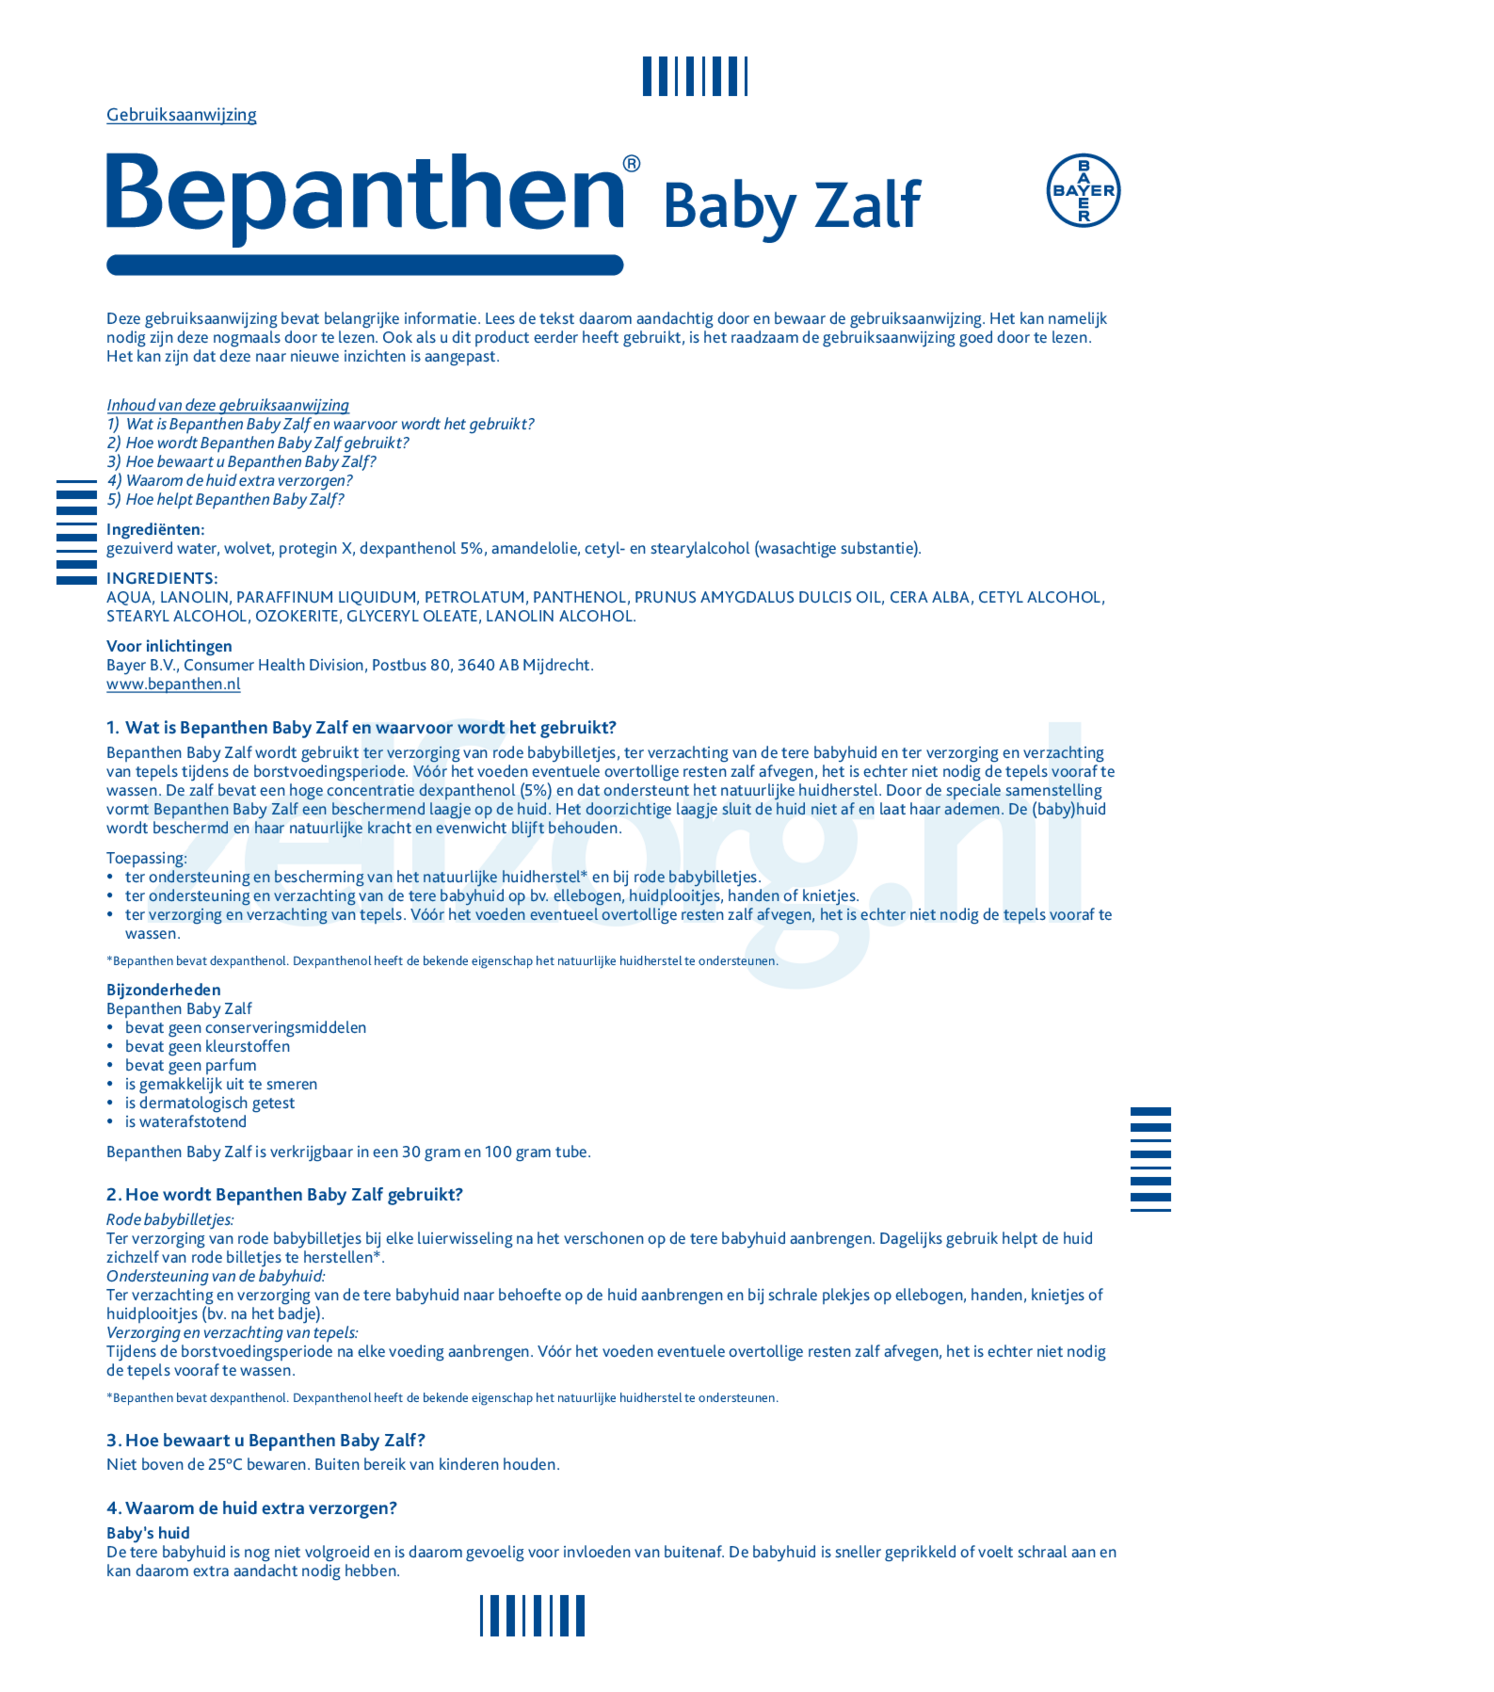 Babyzalf Pakket bij rode billen afbeelding van document #1, gebruiksaanwijzing